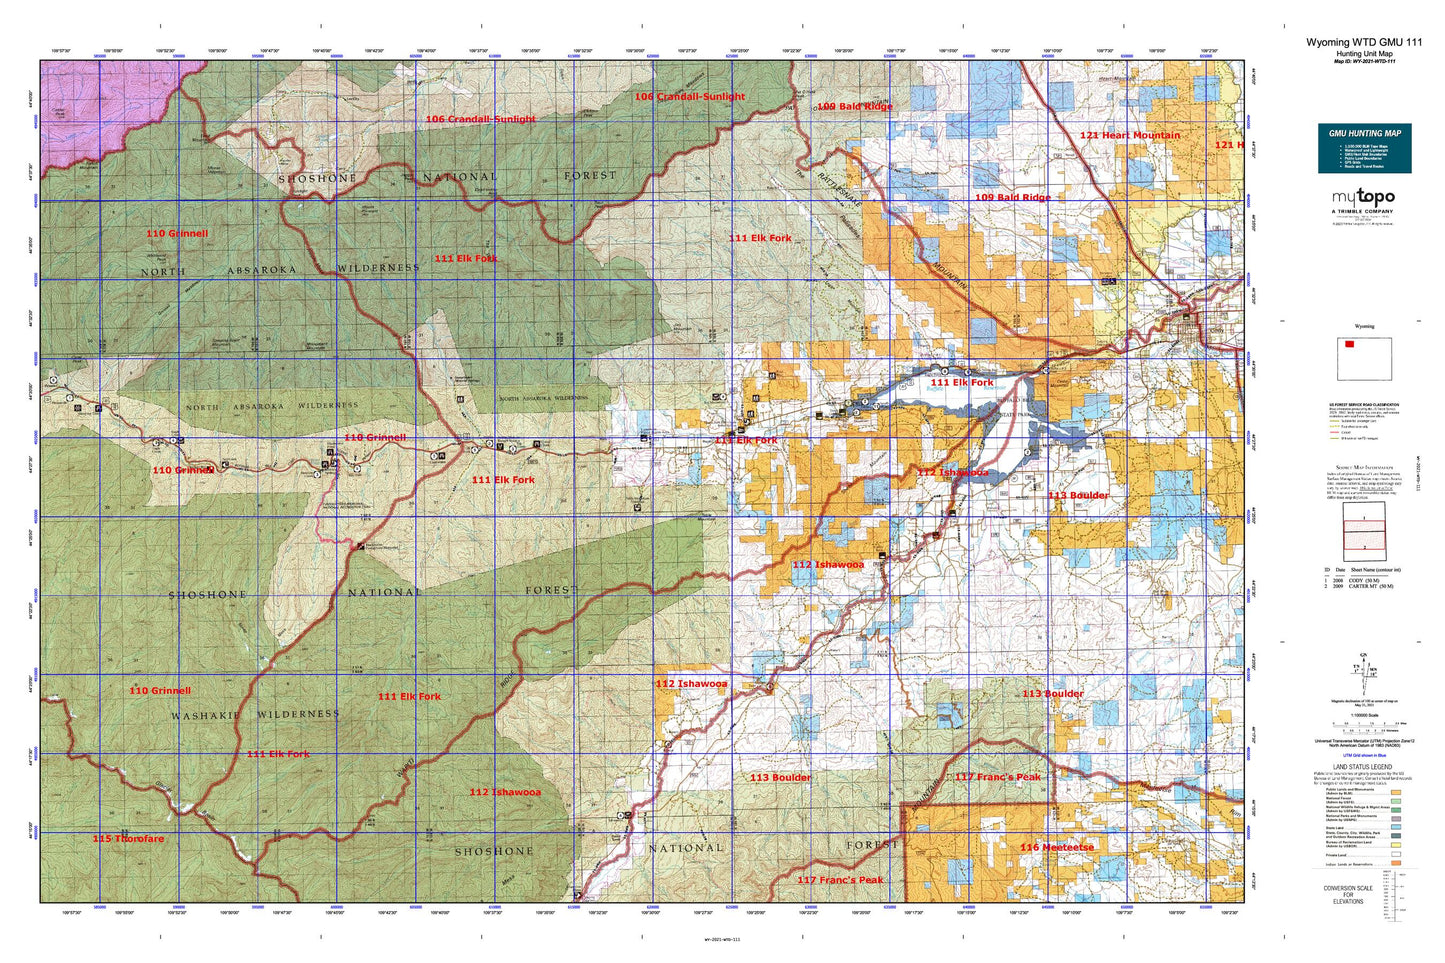 Wyoming Whitetail Deer GMU 111 Map Image